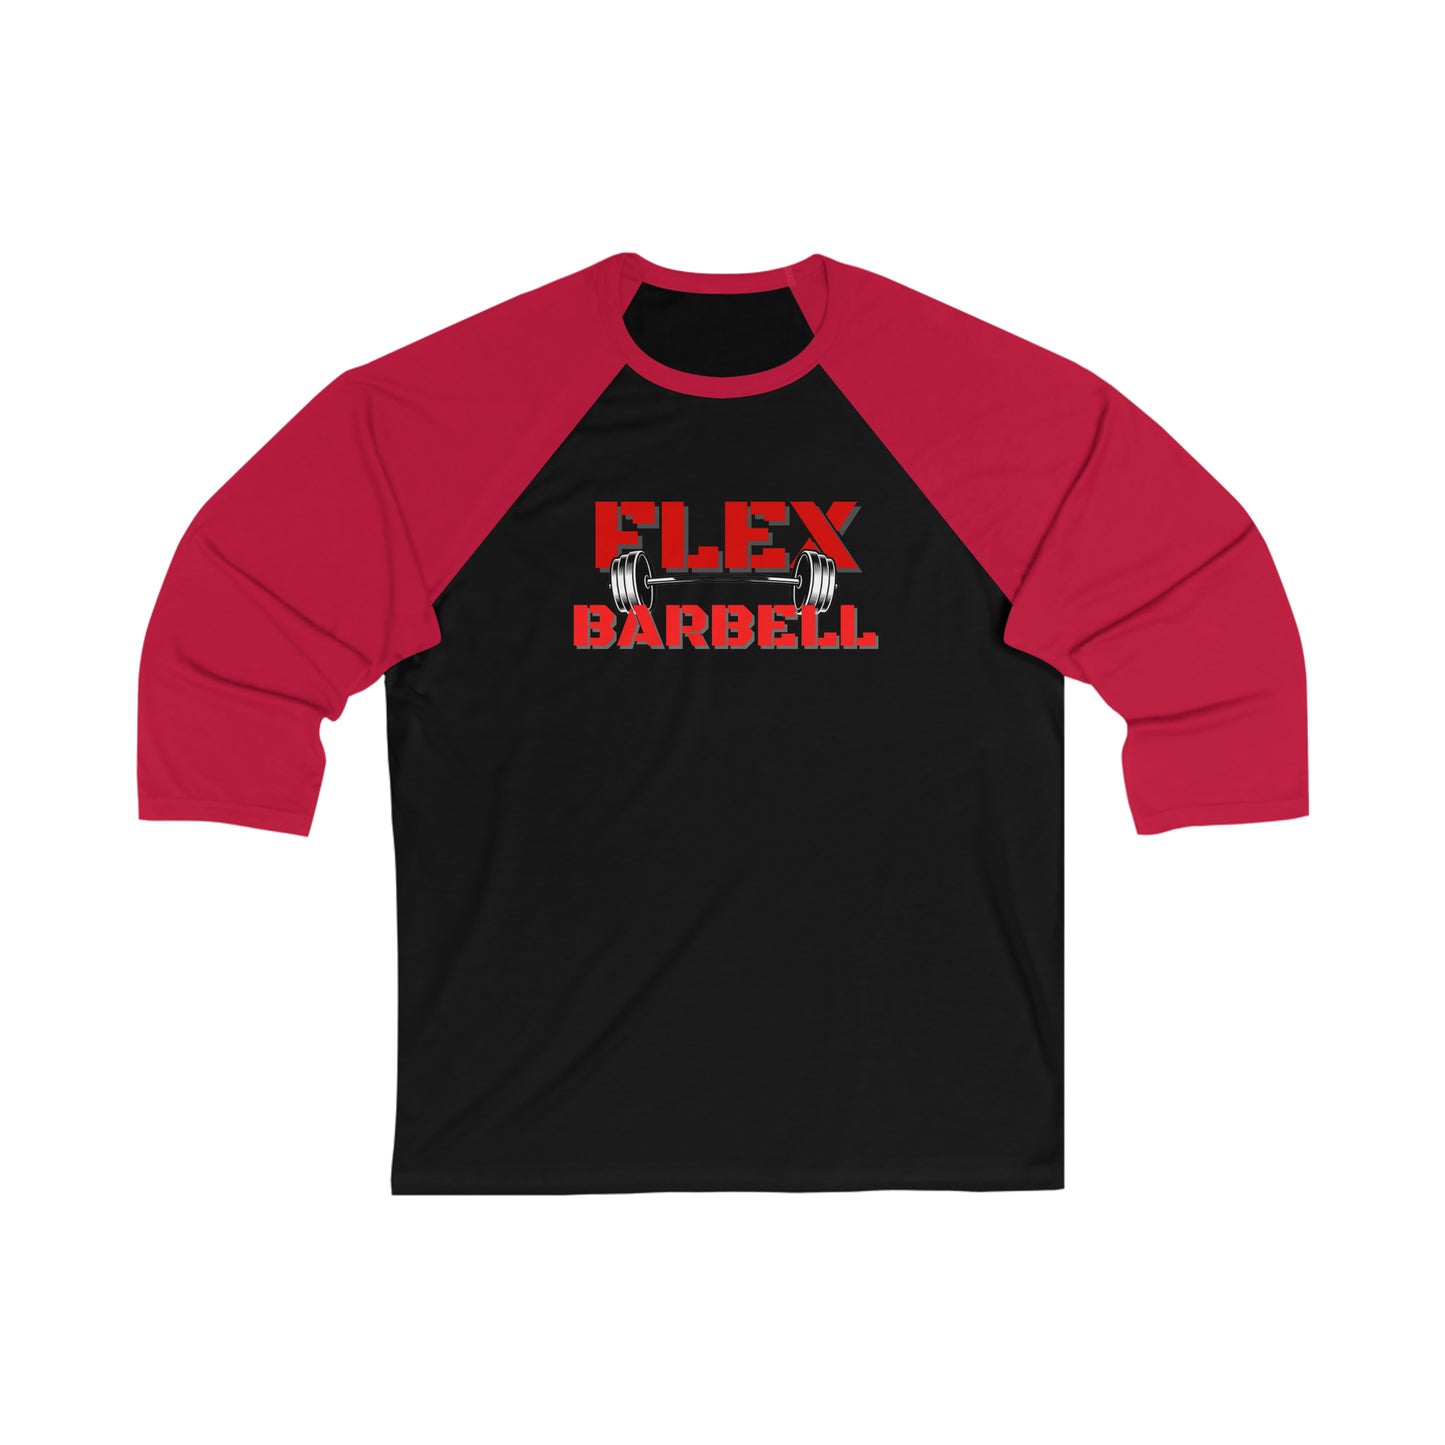 Flex Barbell 3\4 Sleeve Baseball Tee